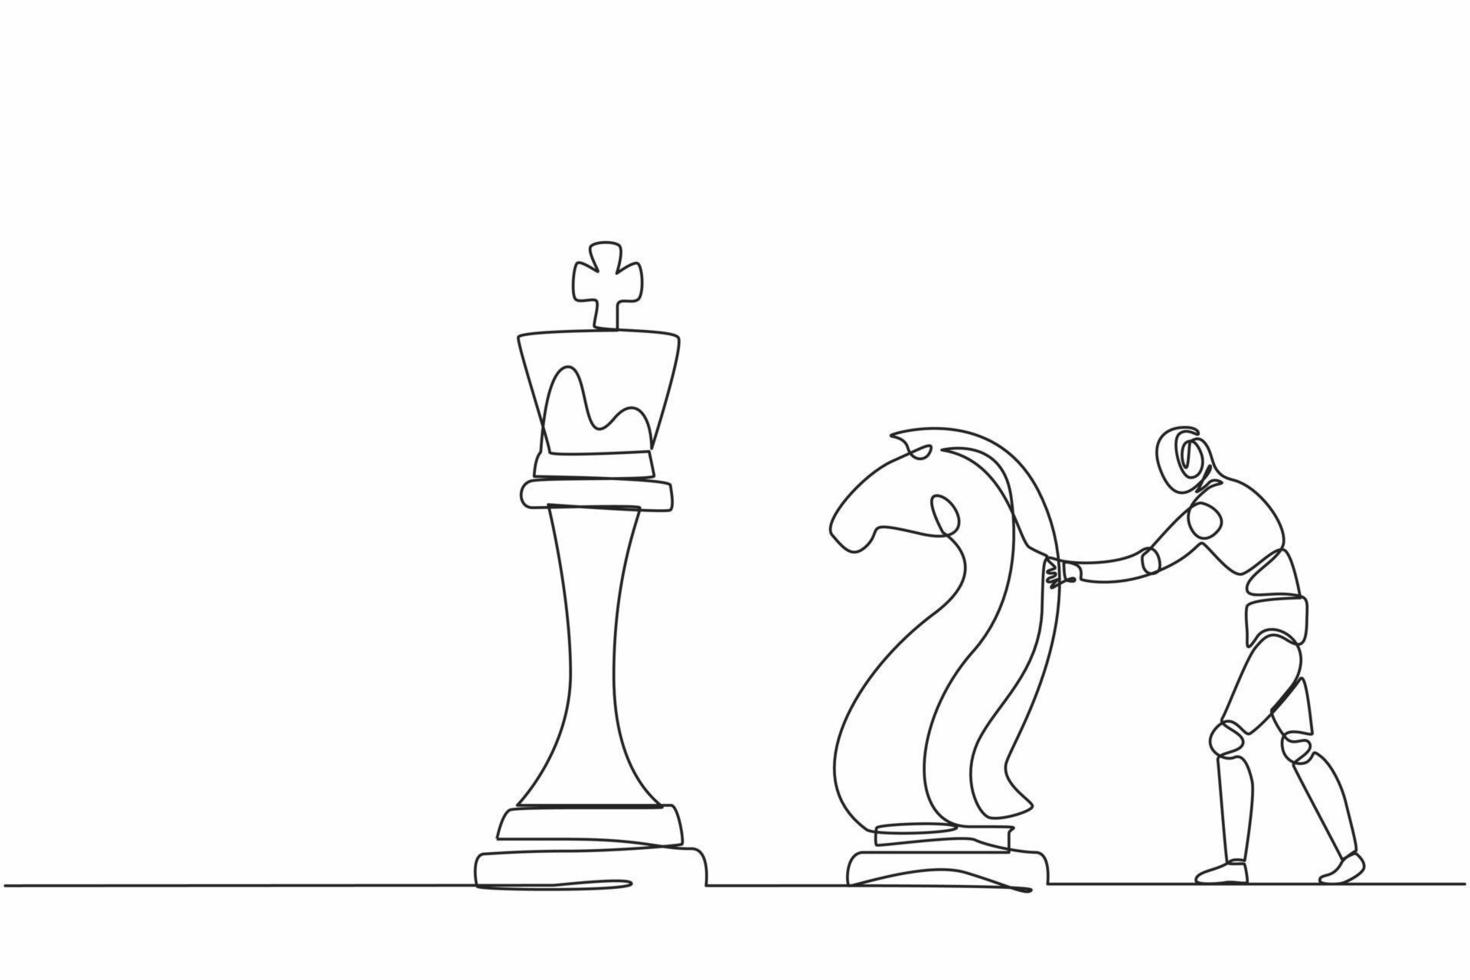 Los robots de dibujo de una línea continua empujan una enorme pieza de ajedrez de caballo caballero para derribar al rey. organismo cibernético robot humanoide. futuro concepto de desarrollo de robótica. gráfico vectorial de diseño de dibujo de una sola línea vector